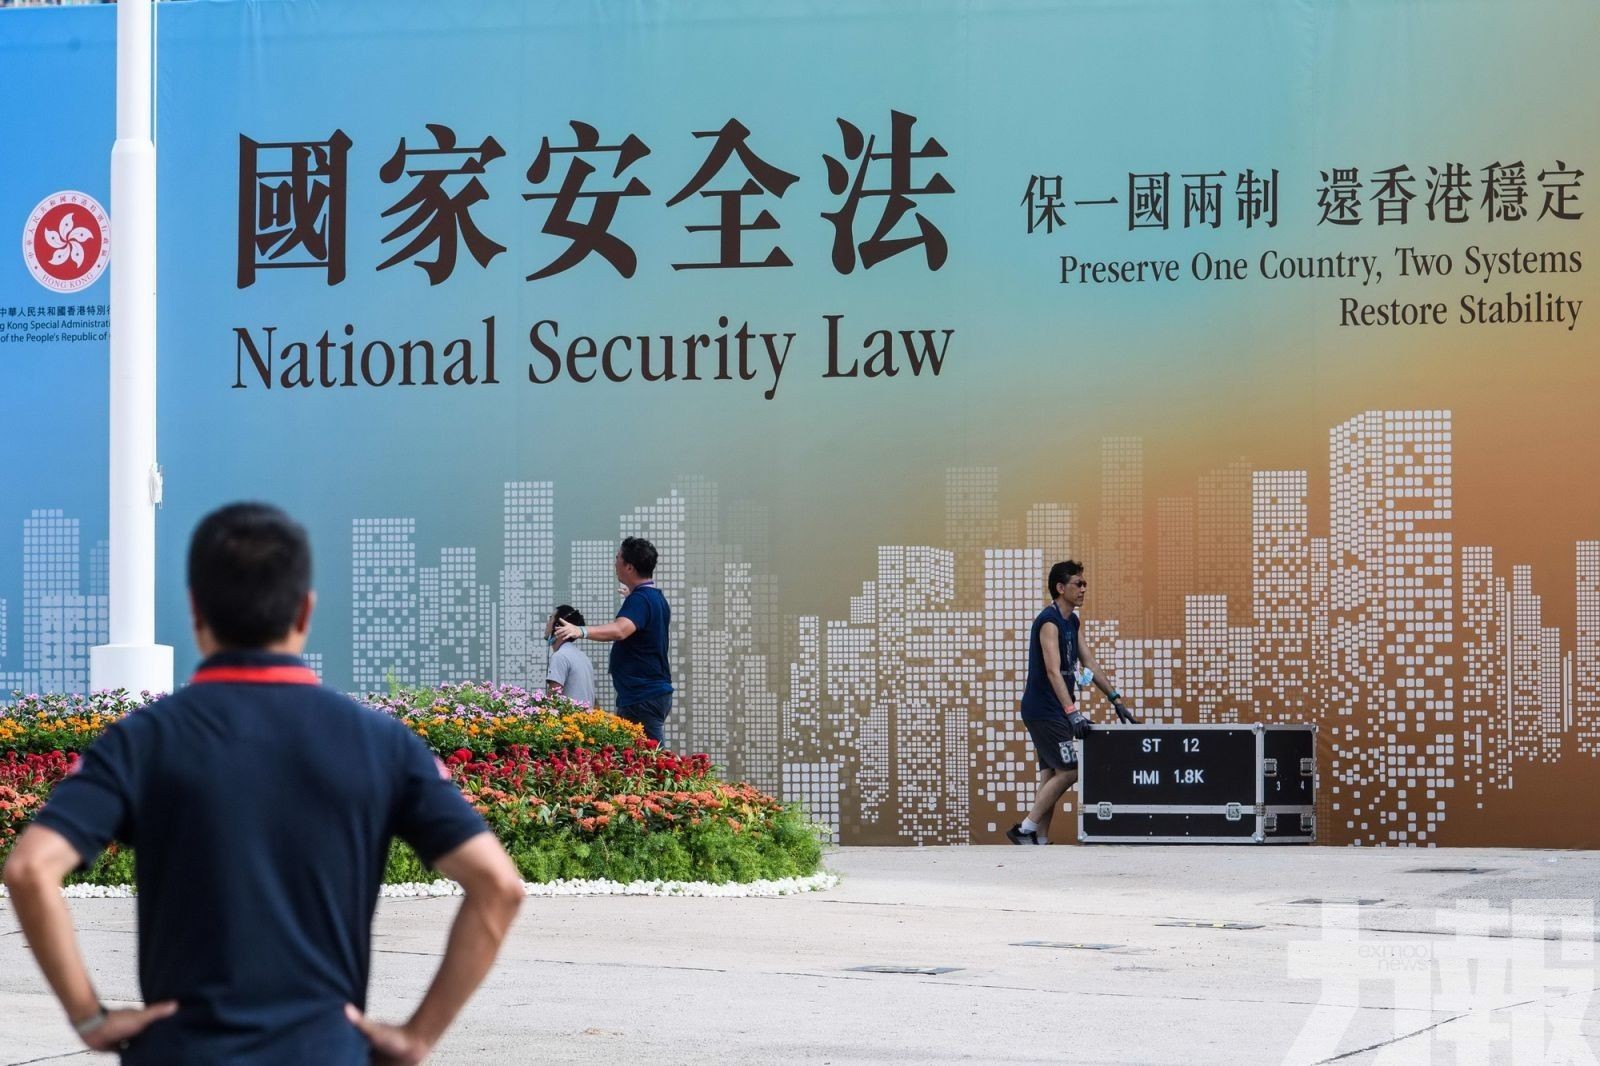 港澳辦強烈譴責美國「香港自治法案」